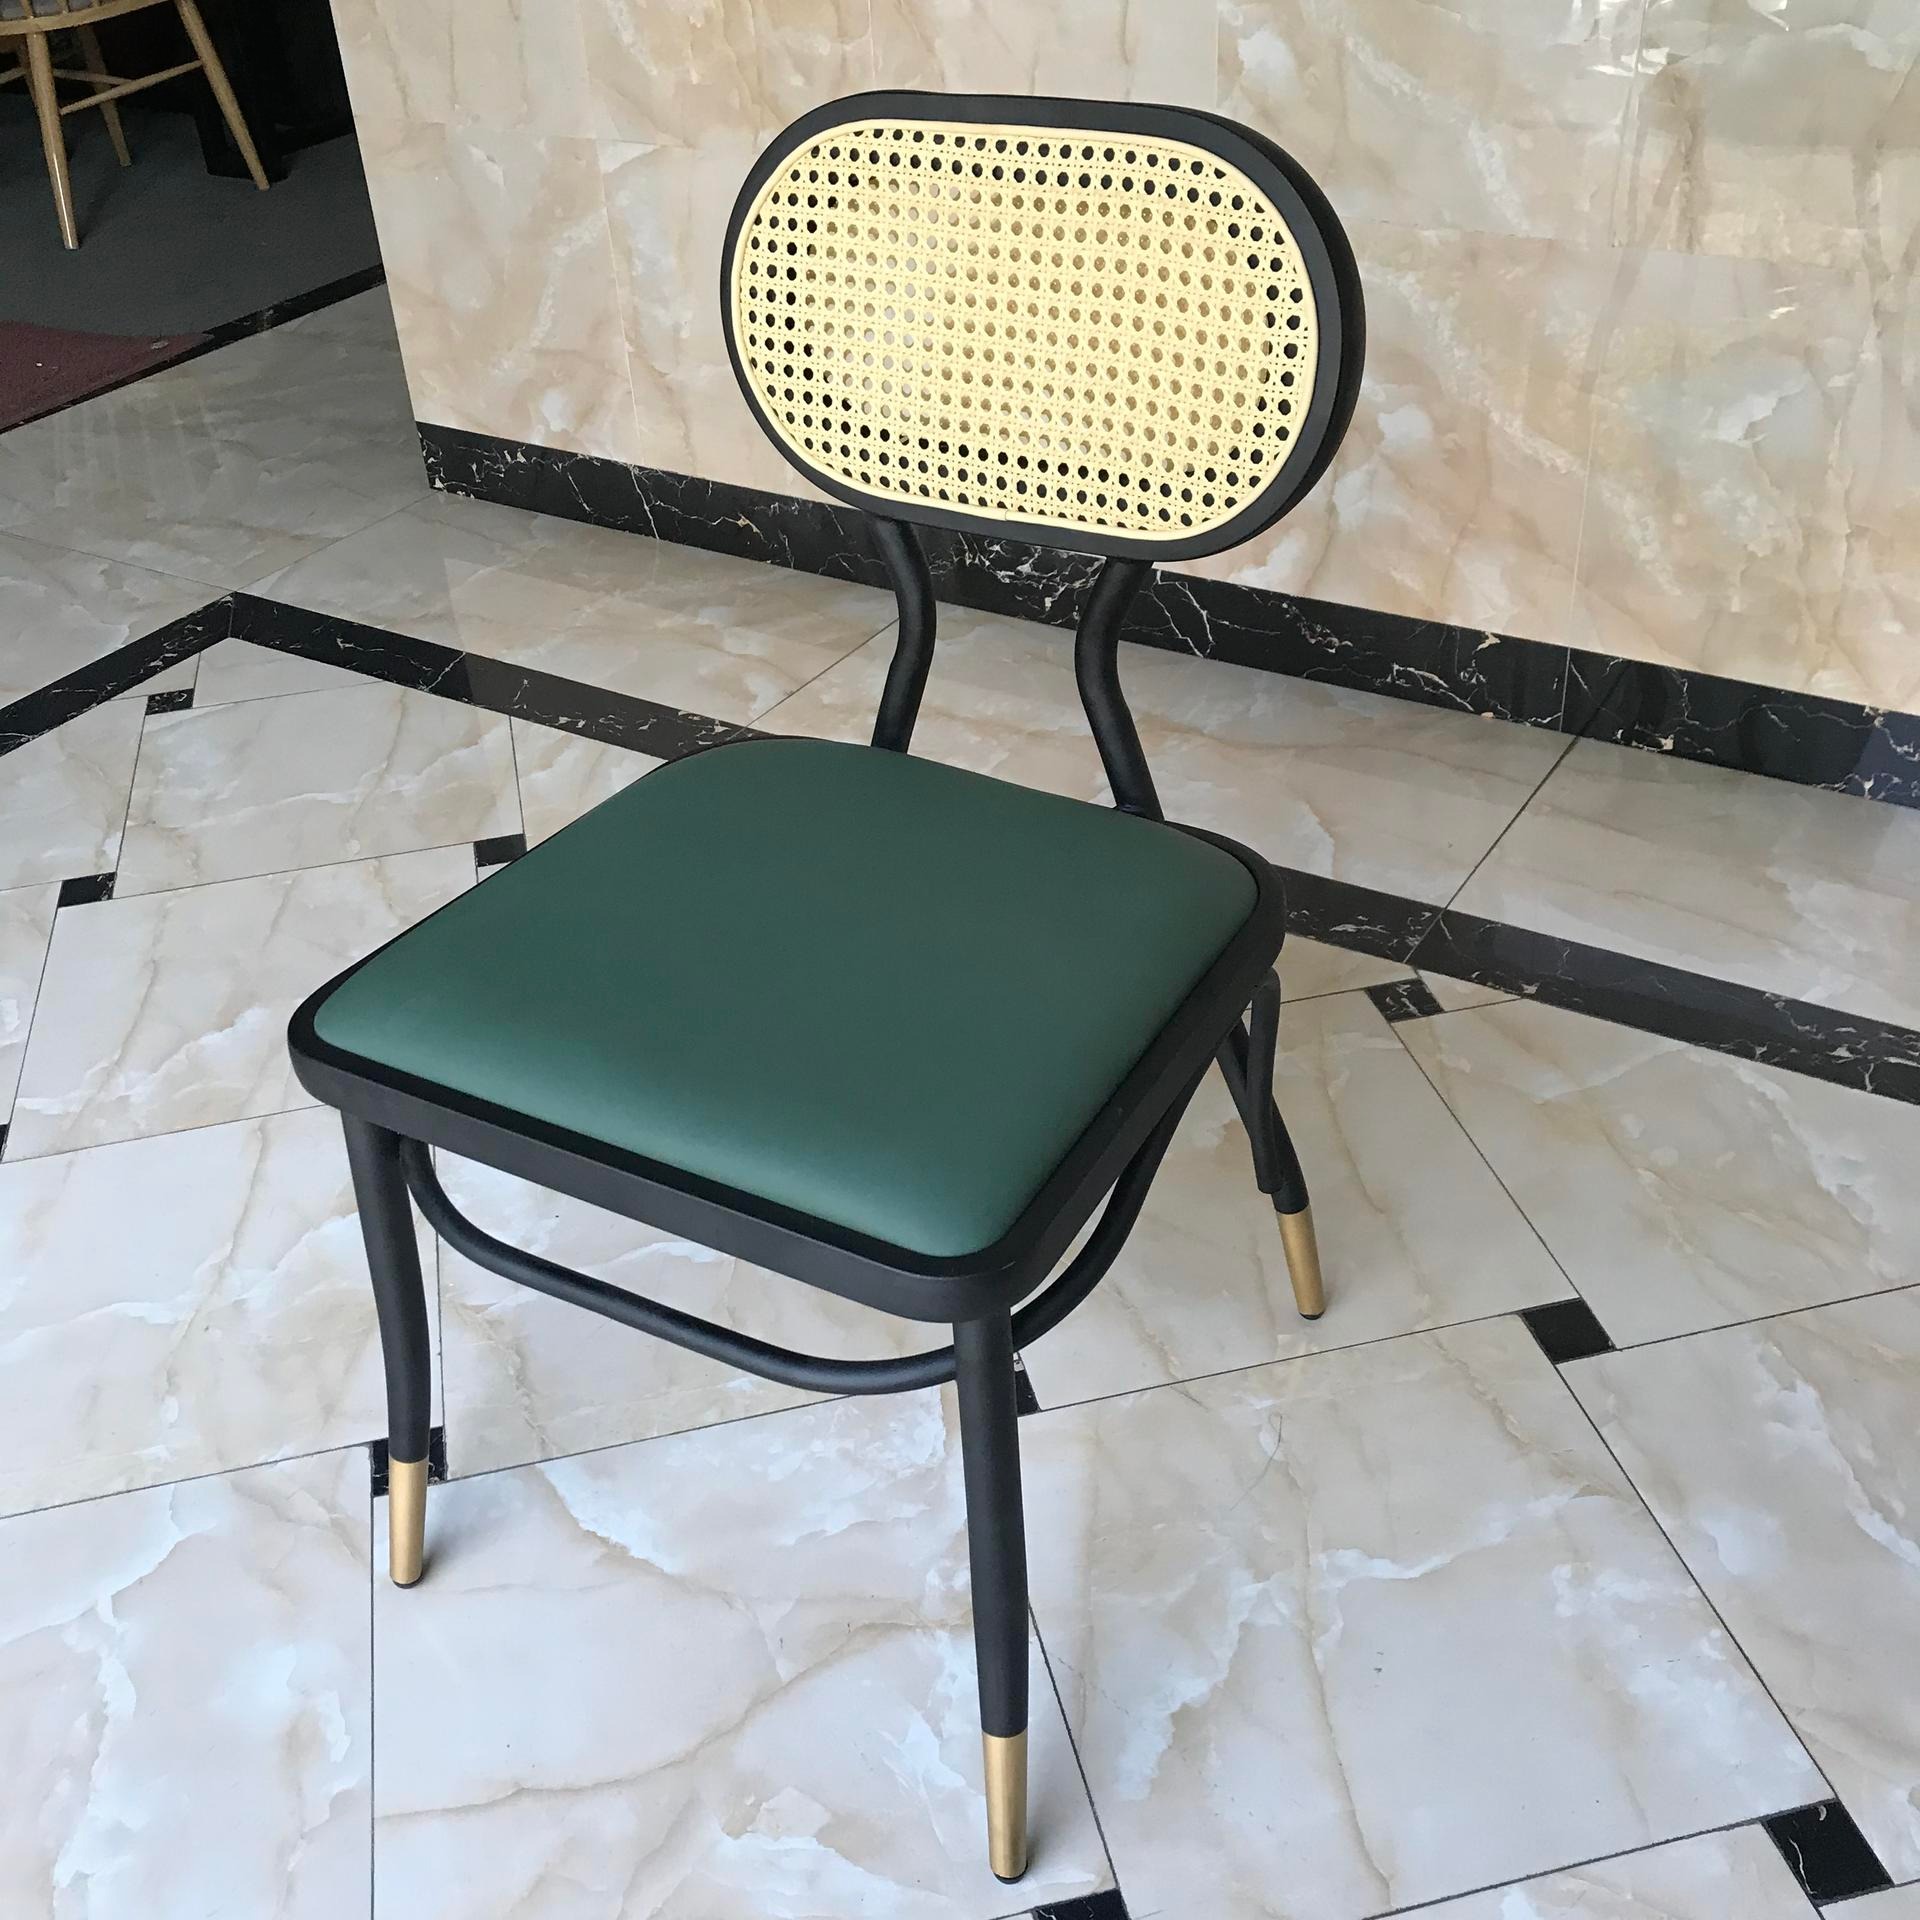 广州2020新款椅子编藤背椅 实木 钢架 网红椅 家用椅子 塑料靠背椅 北欧塑料椅 公共餐椅 PP塑胶餐椅 快餐桌塑料椅